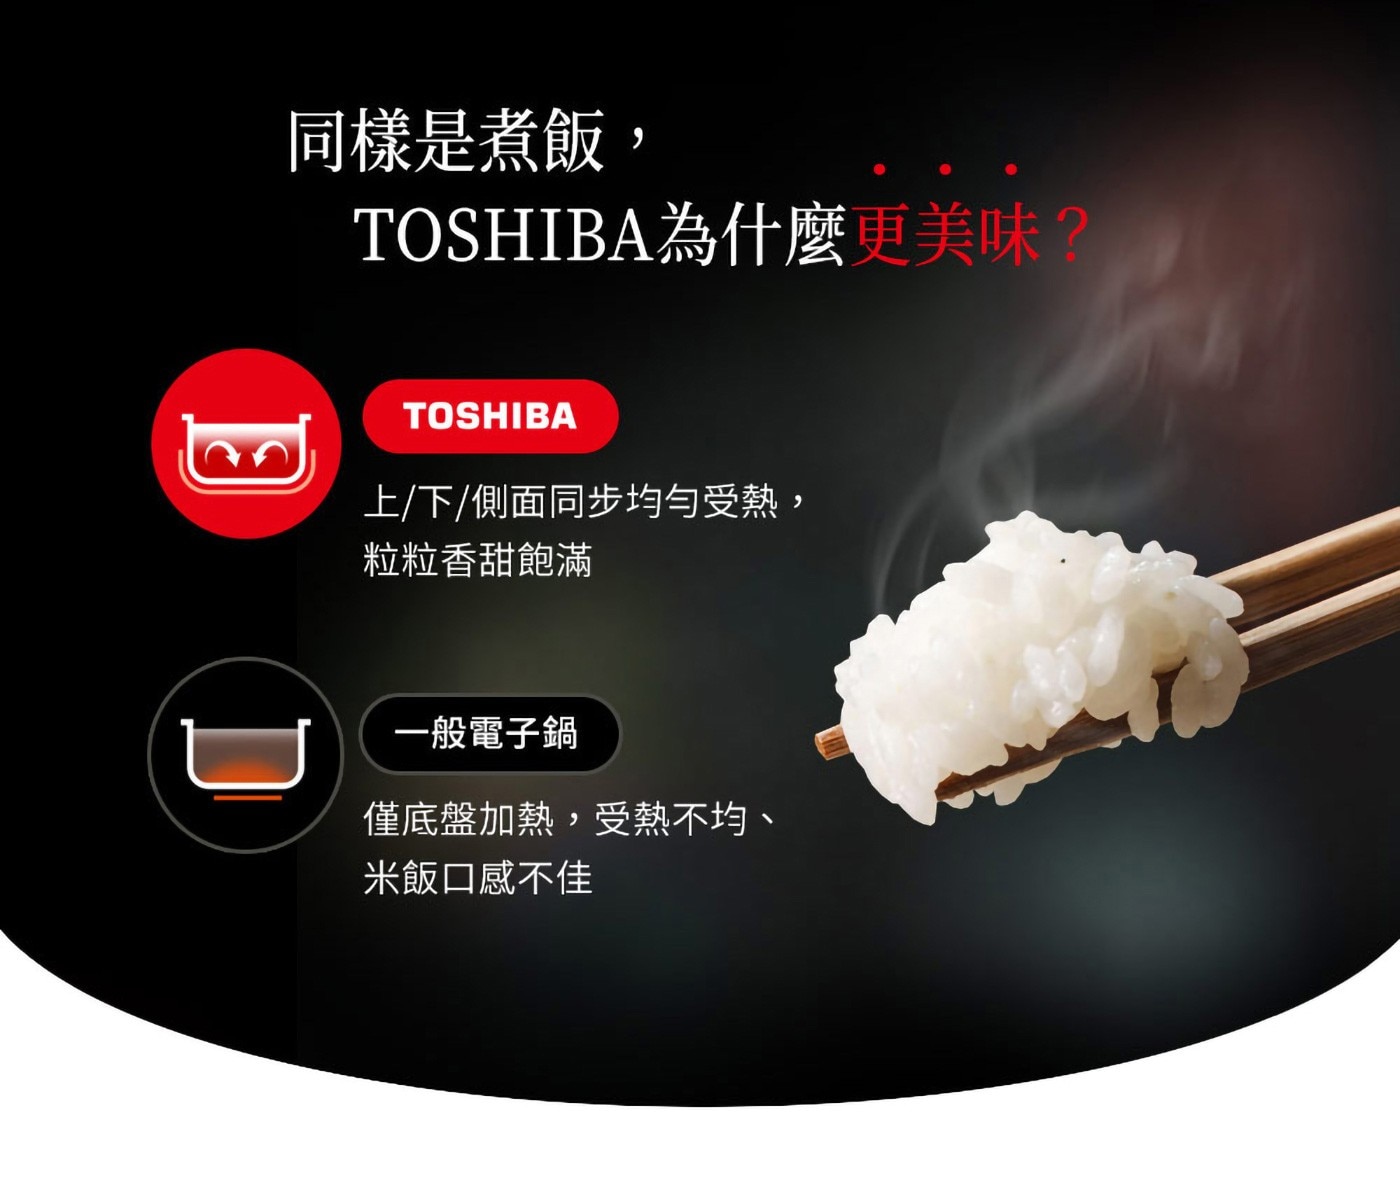 Toshiba 鍛造球釜微電腦電子鍋 均勻受熱